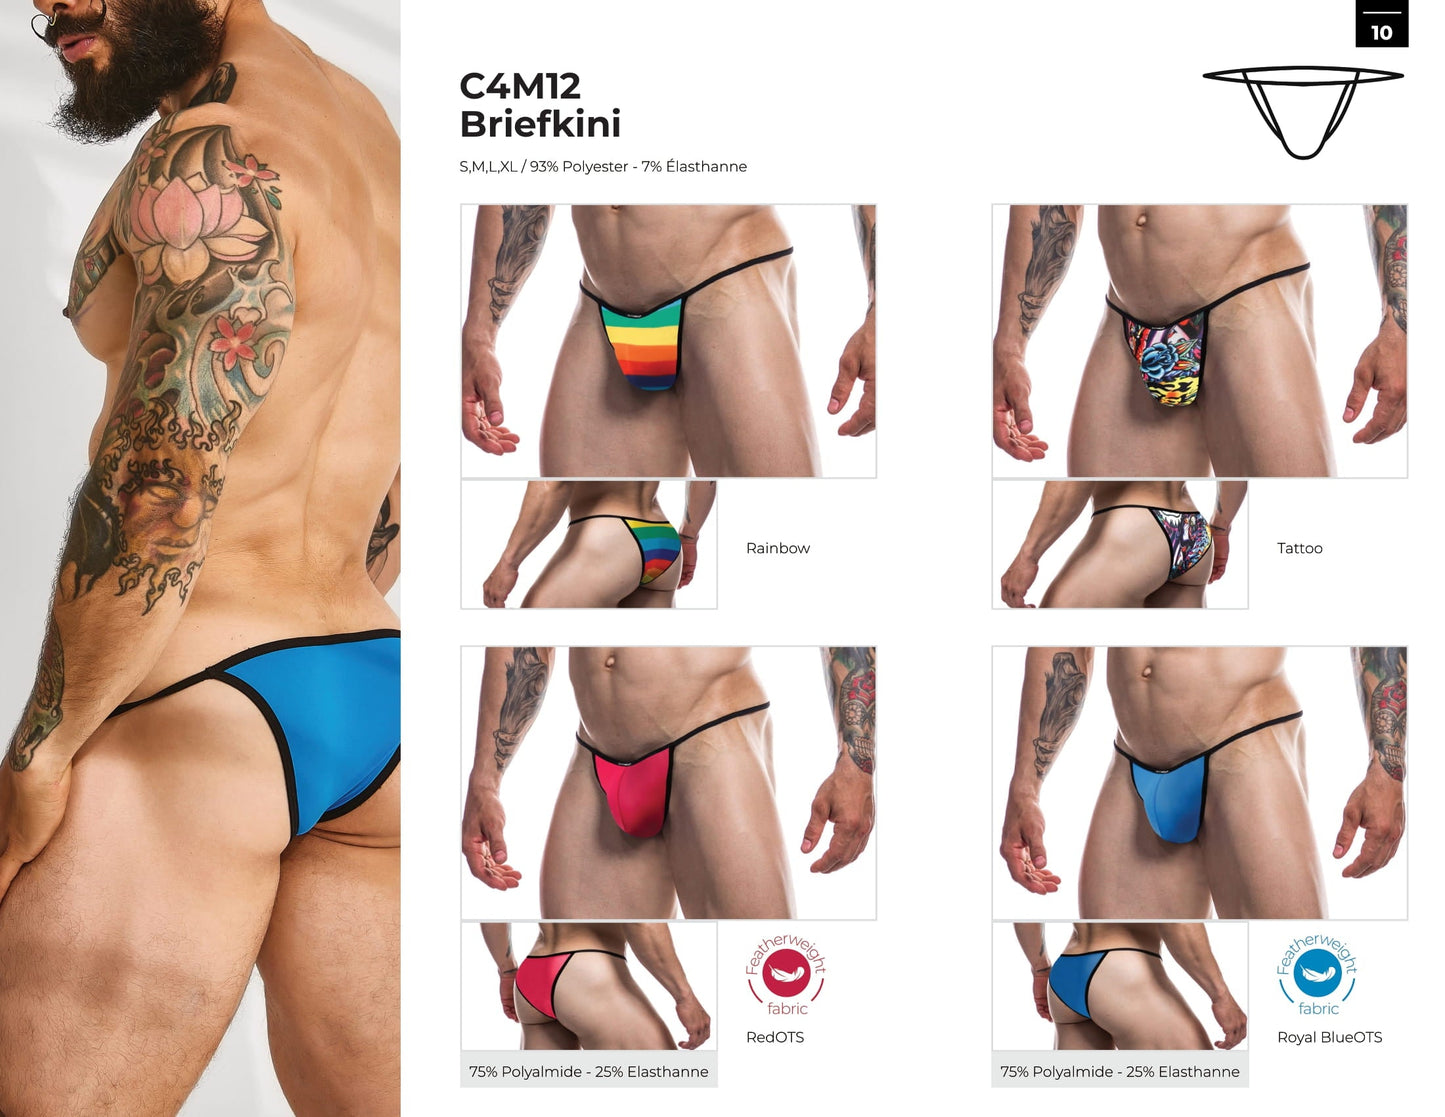 CUT4MEN - C4M12 - Briefkini Men Underwear - Tattoo - 4 Sizes - 1 Piece